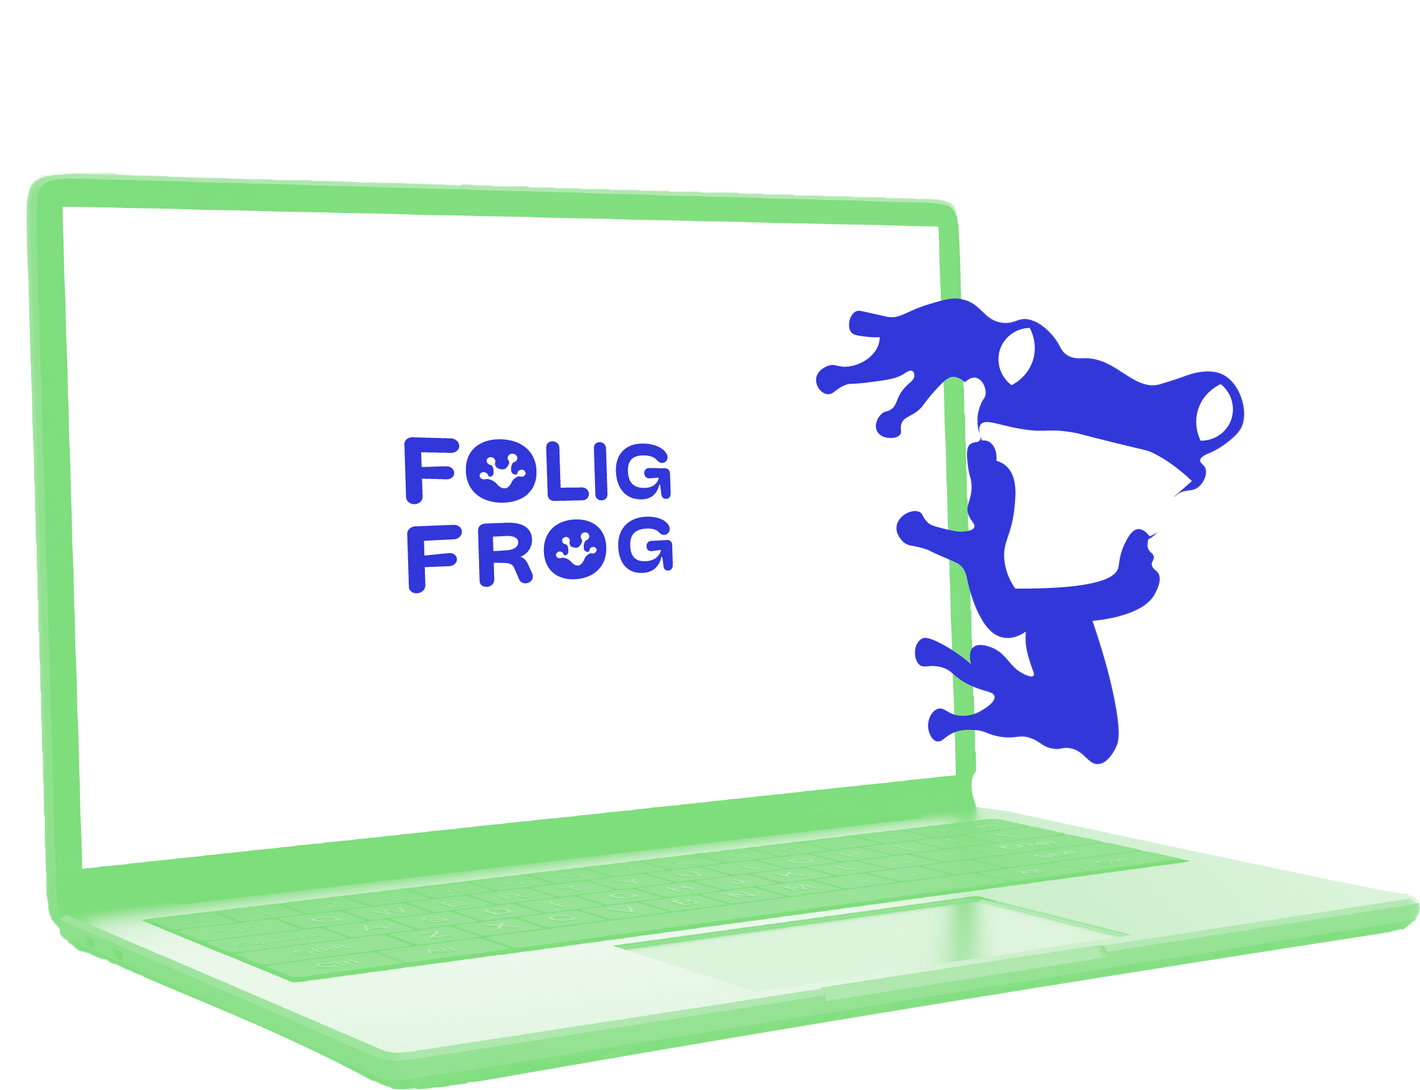 Folig Frog logo green labtop and blue frog